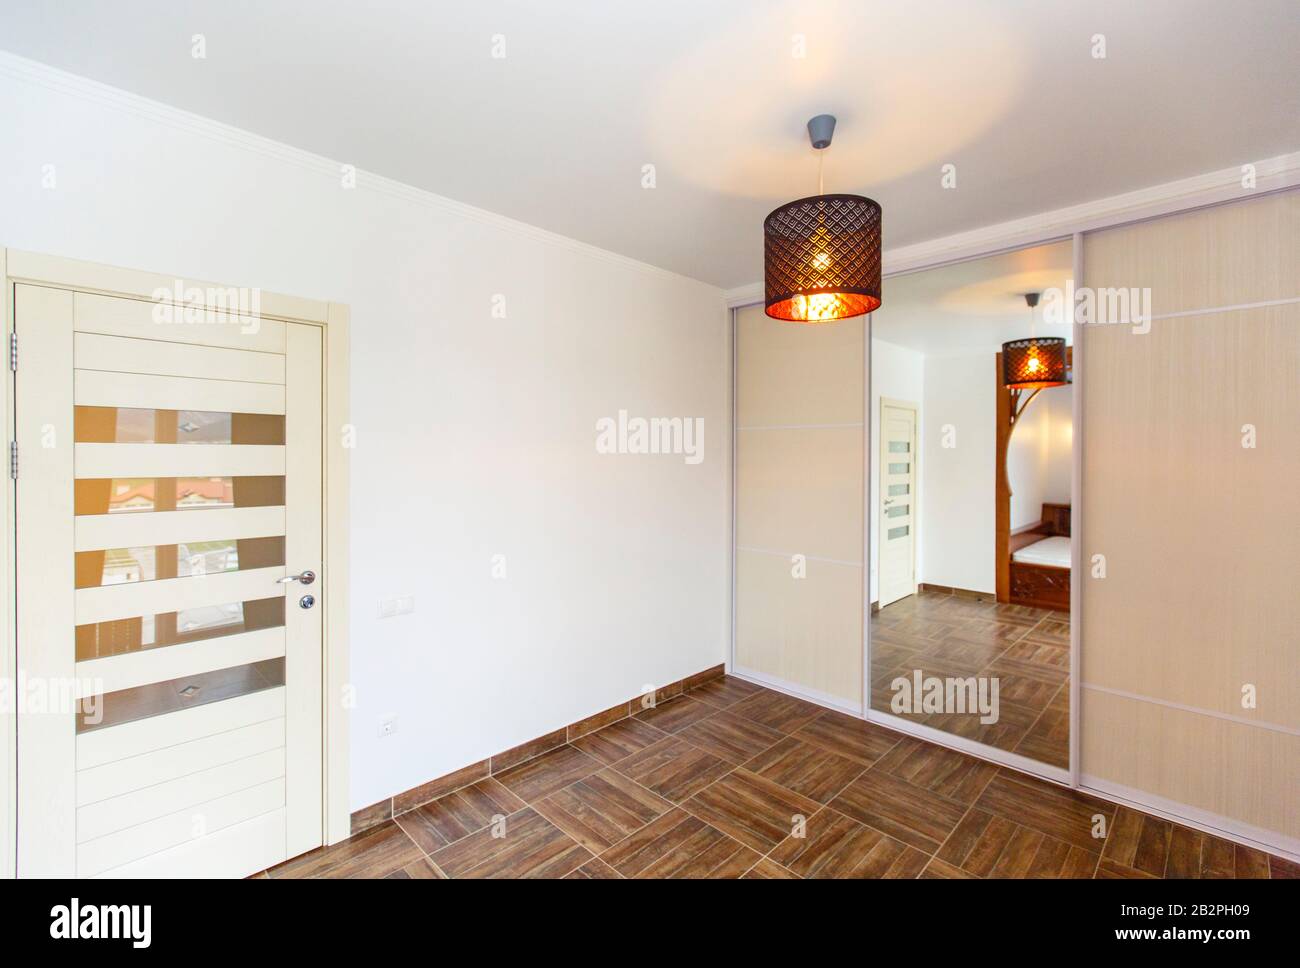 Ecke des Zimmers mit Spiegel im schrank, Tür, Kronleuchter und beigefarbenen Fliesen auf dem Boden. Stockfoto